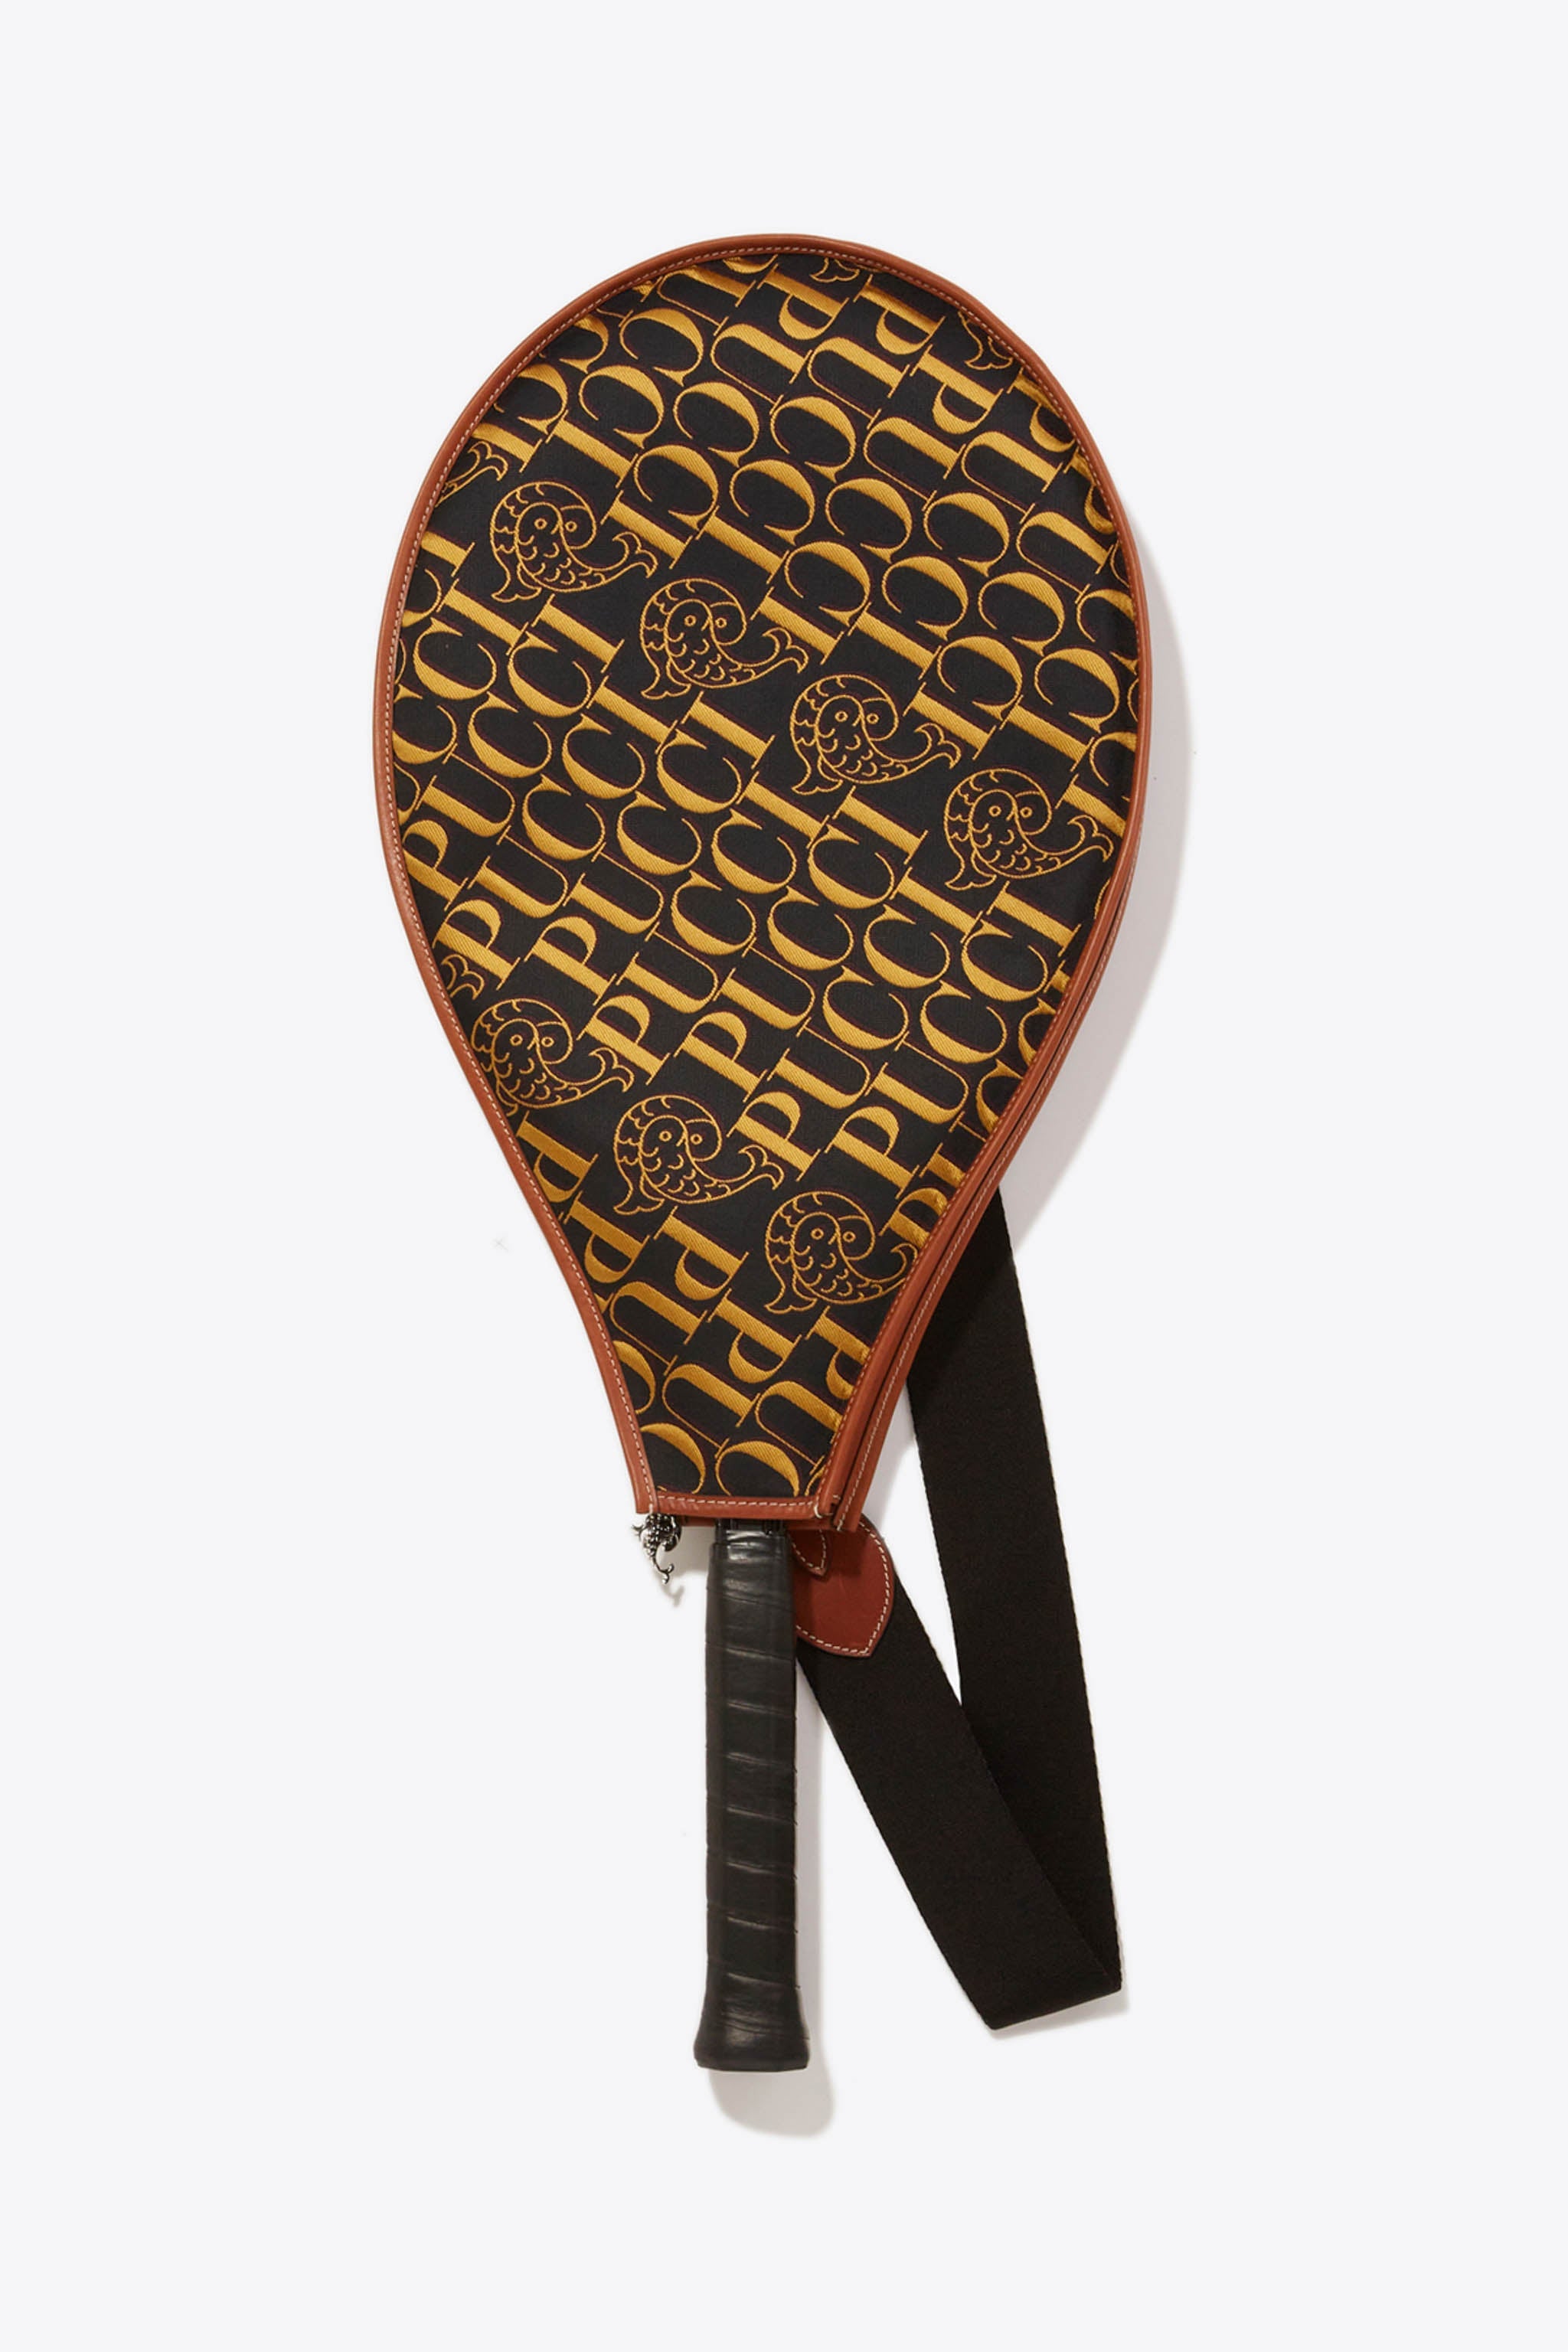 Louis Vuitton's Black Monogram Ping Pong Set